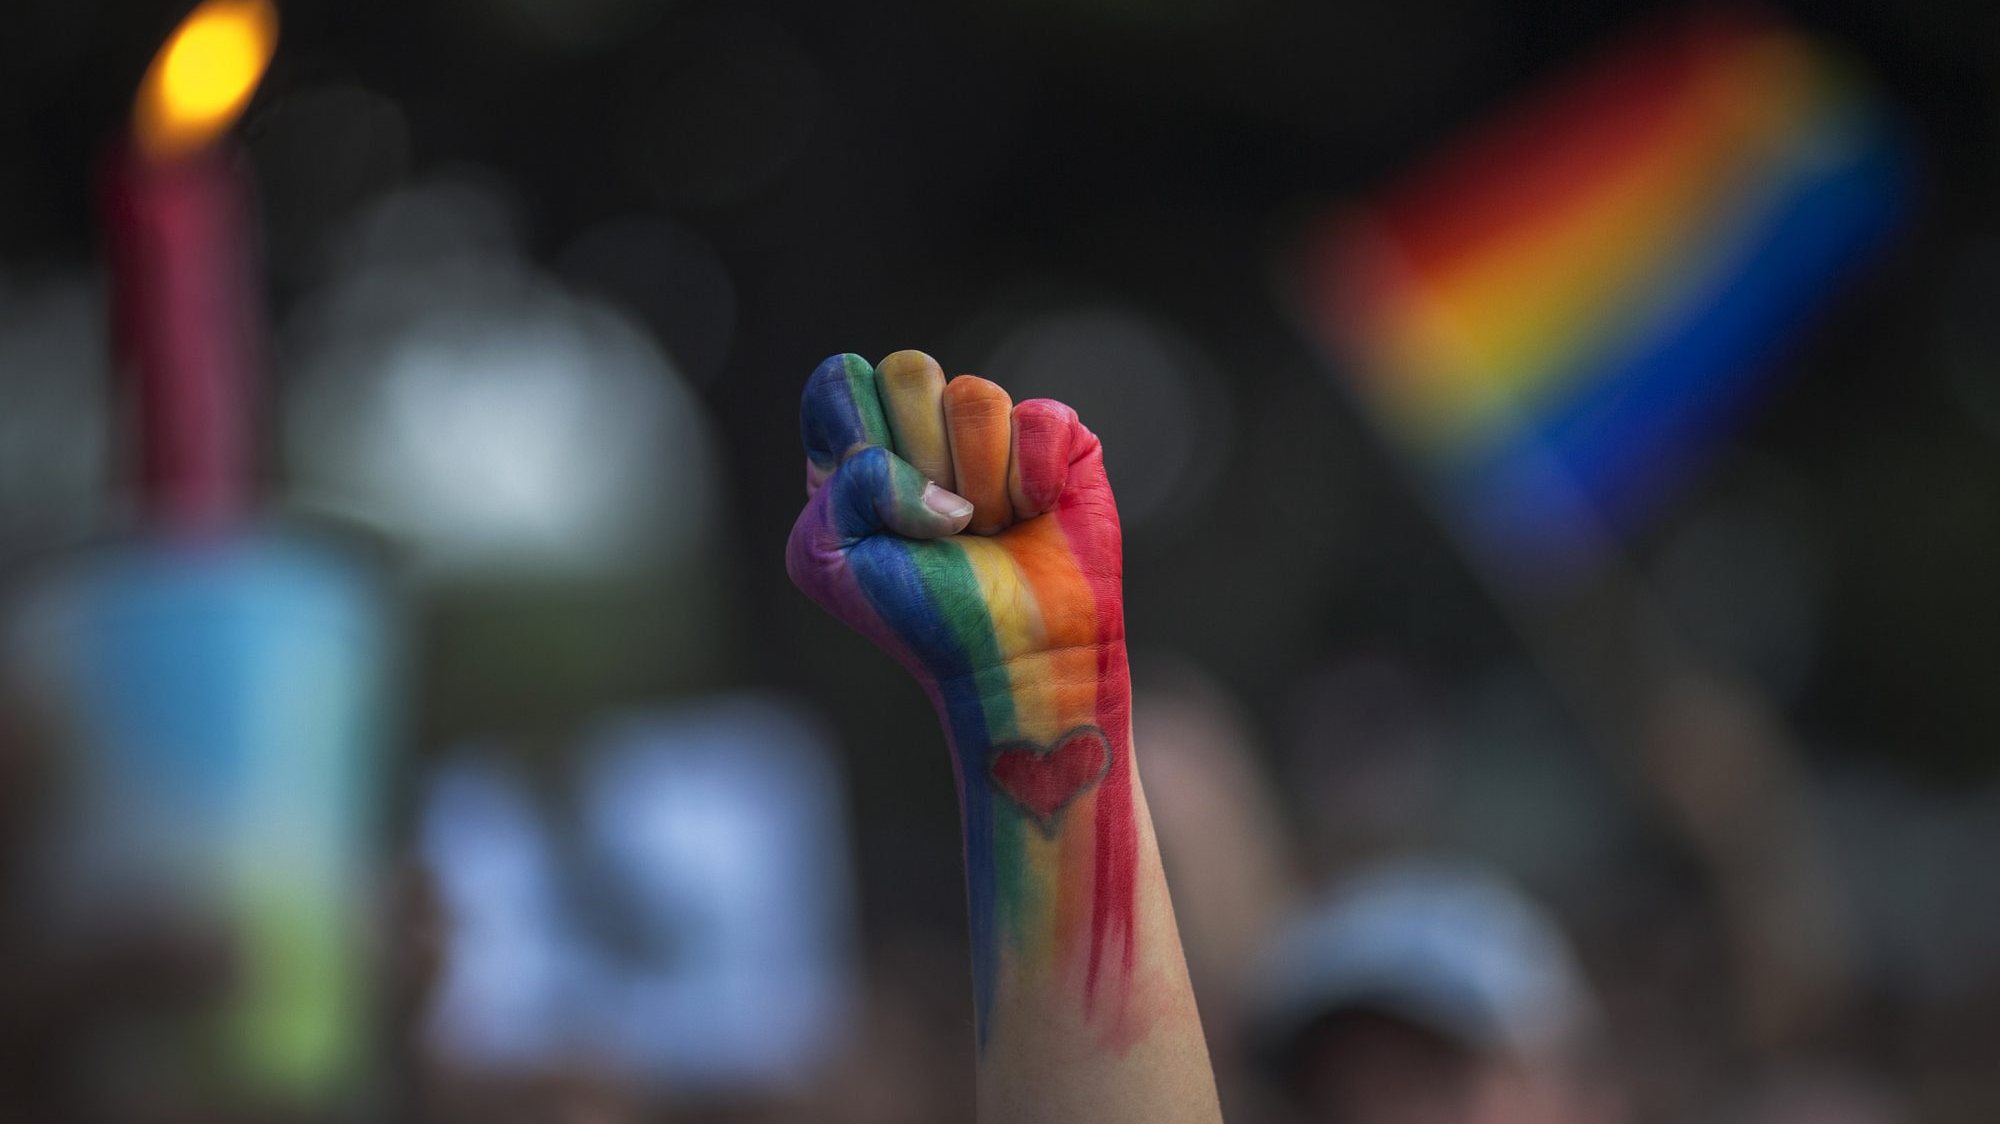 Portuga está no top 5 dos países que legalmente mais reconhecem direitos e protegem as comunidades LGBTI+